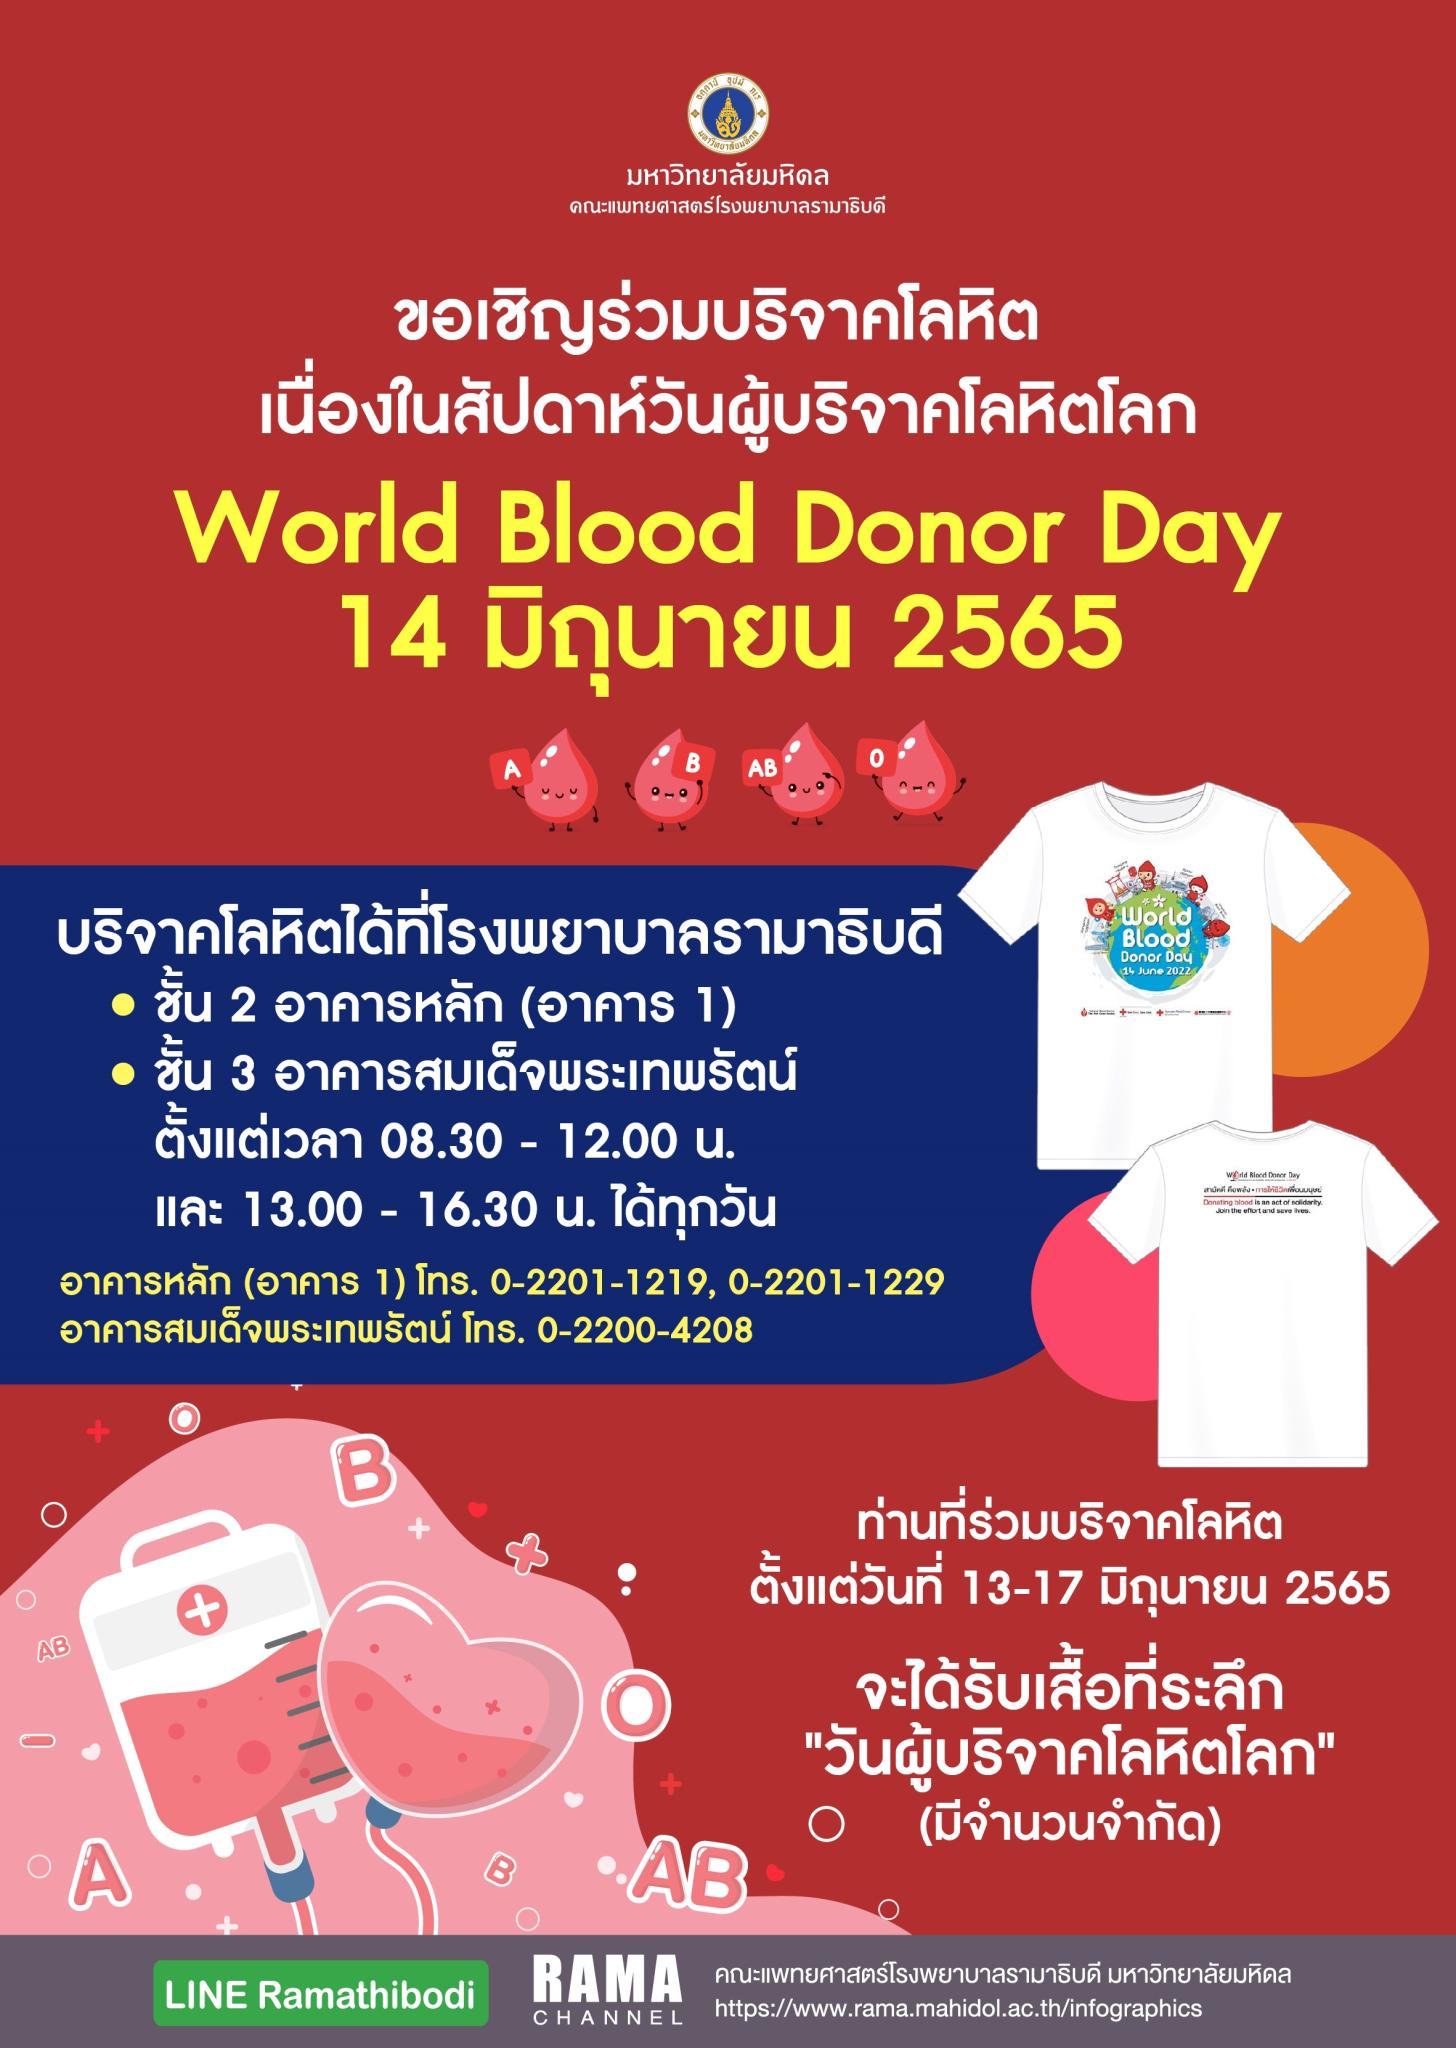 ขอเชิญร่วมบริจาคโลหิต เนื่องในสัปดาห์วันผู้บริจาคโลหิตโลก World Blood Donor Day 14 มิถุนายน 2565